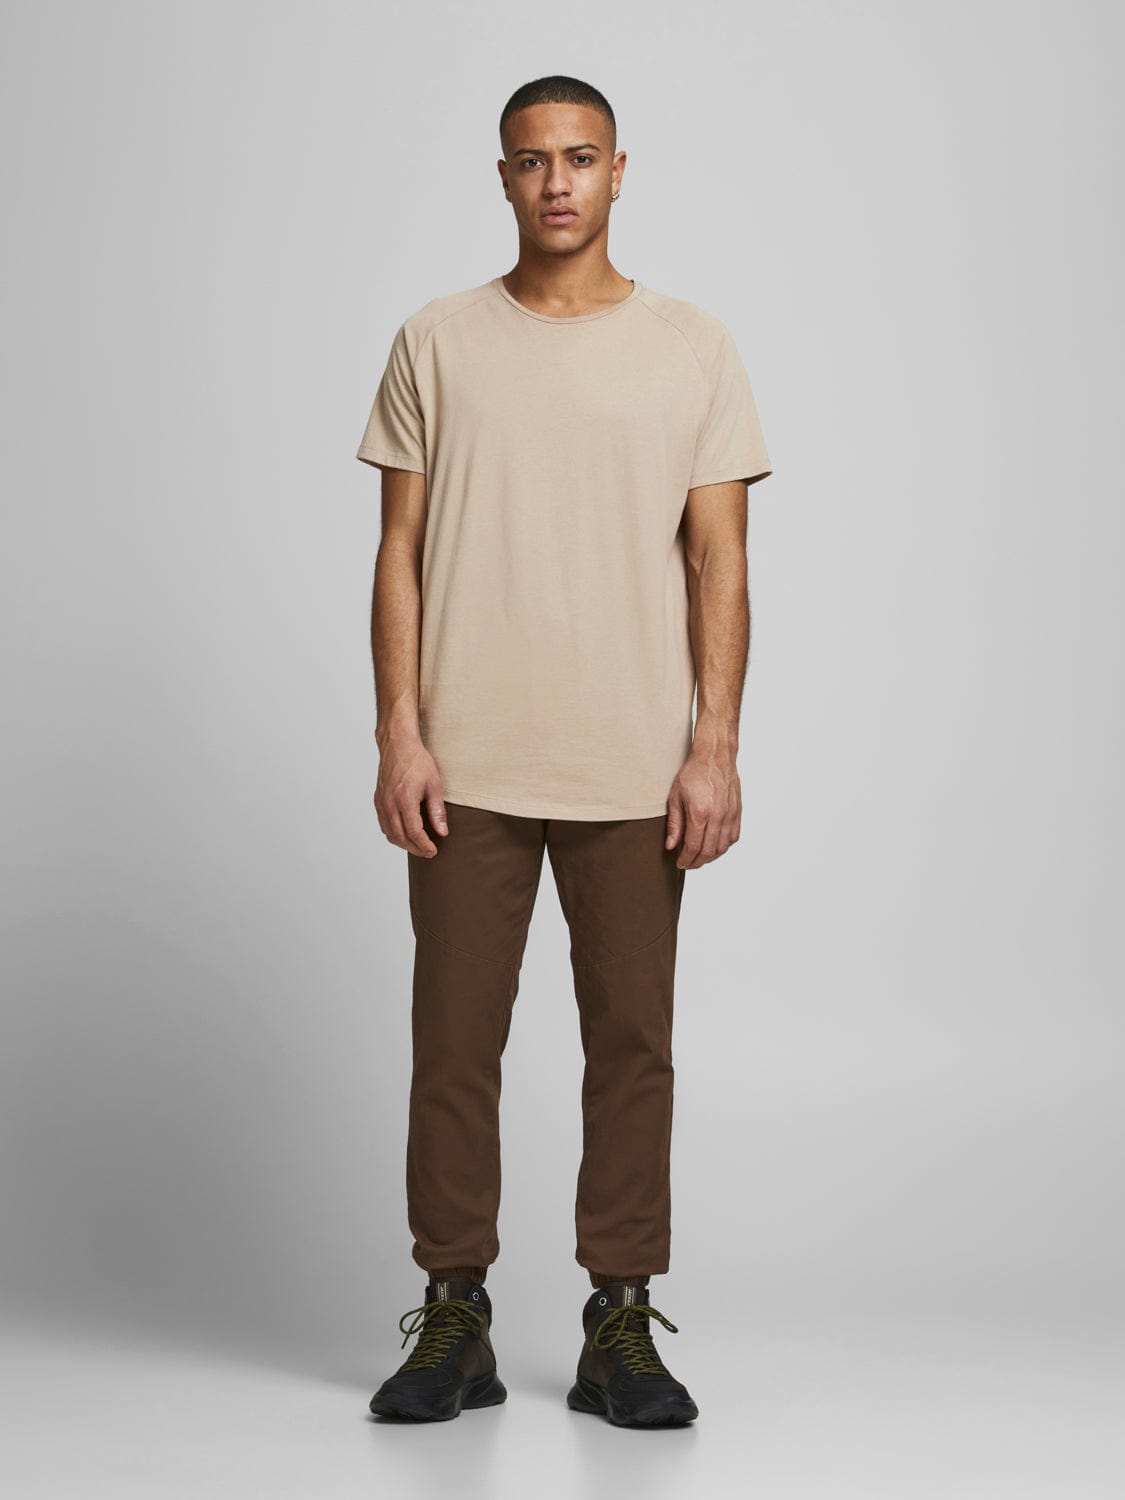 Camiseta hombre básica cuello redondo algodón marrón Curved